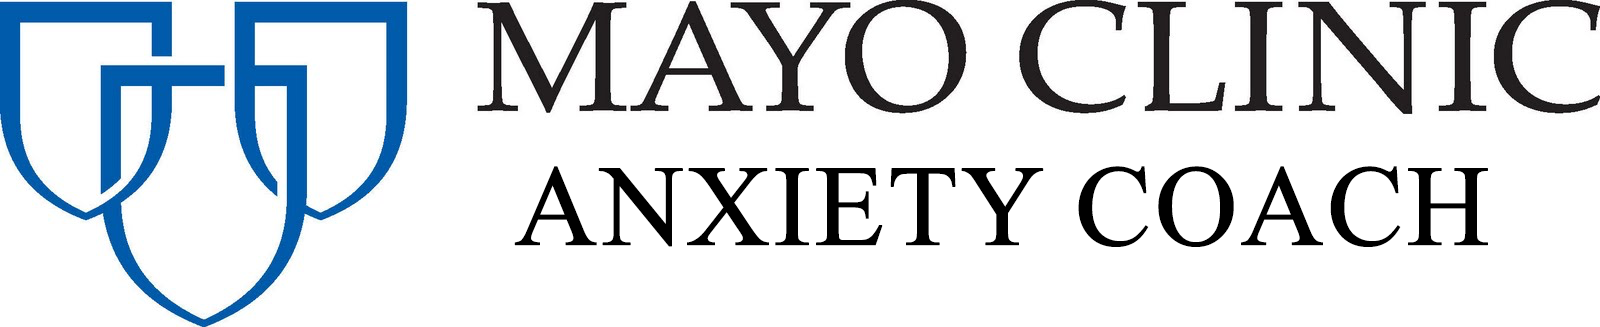 Mayo Anxiety Coach app